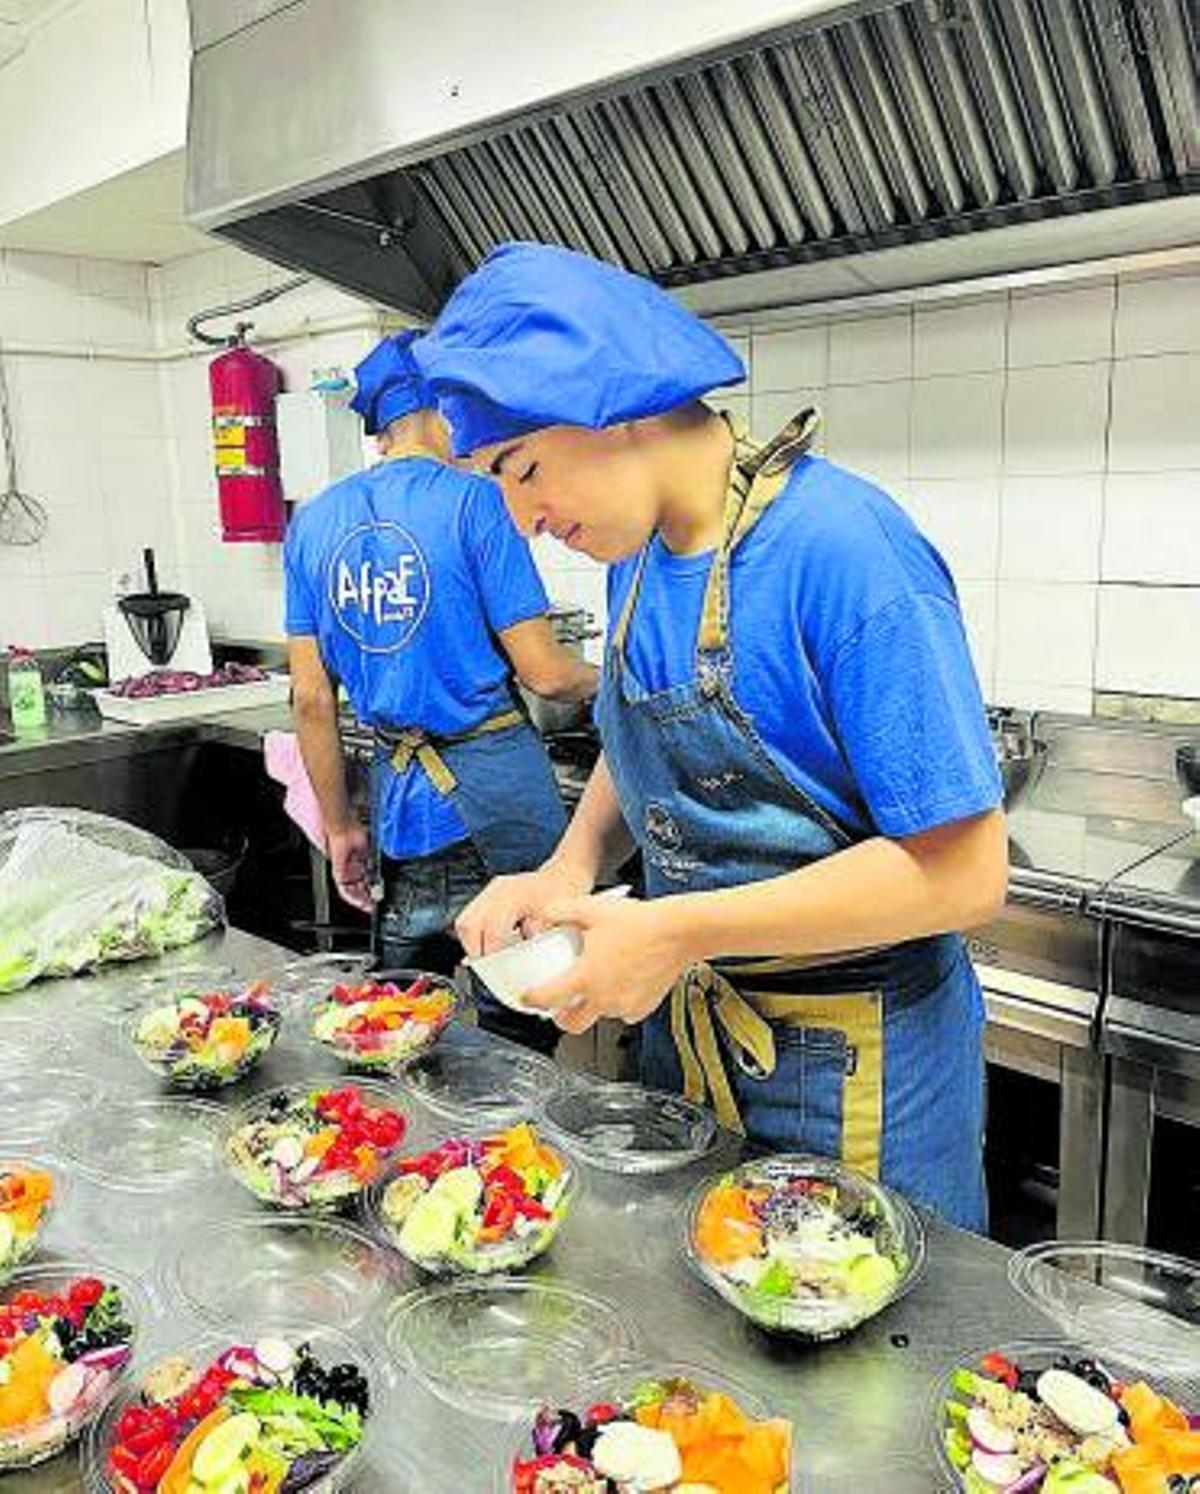 Un noi treballant a la cuina.  | ESCOLA DE NOVES OPORTUNITATS